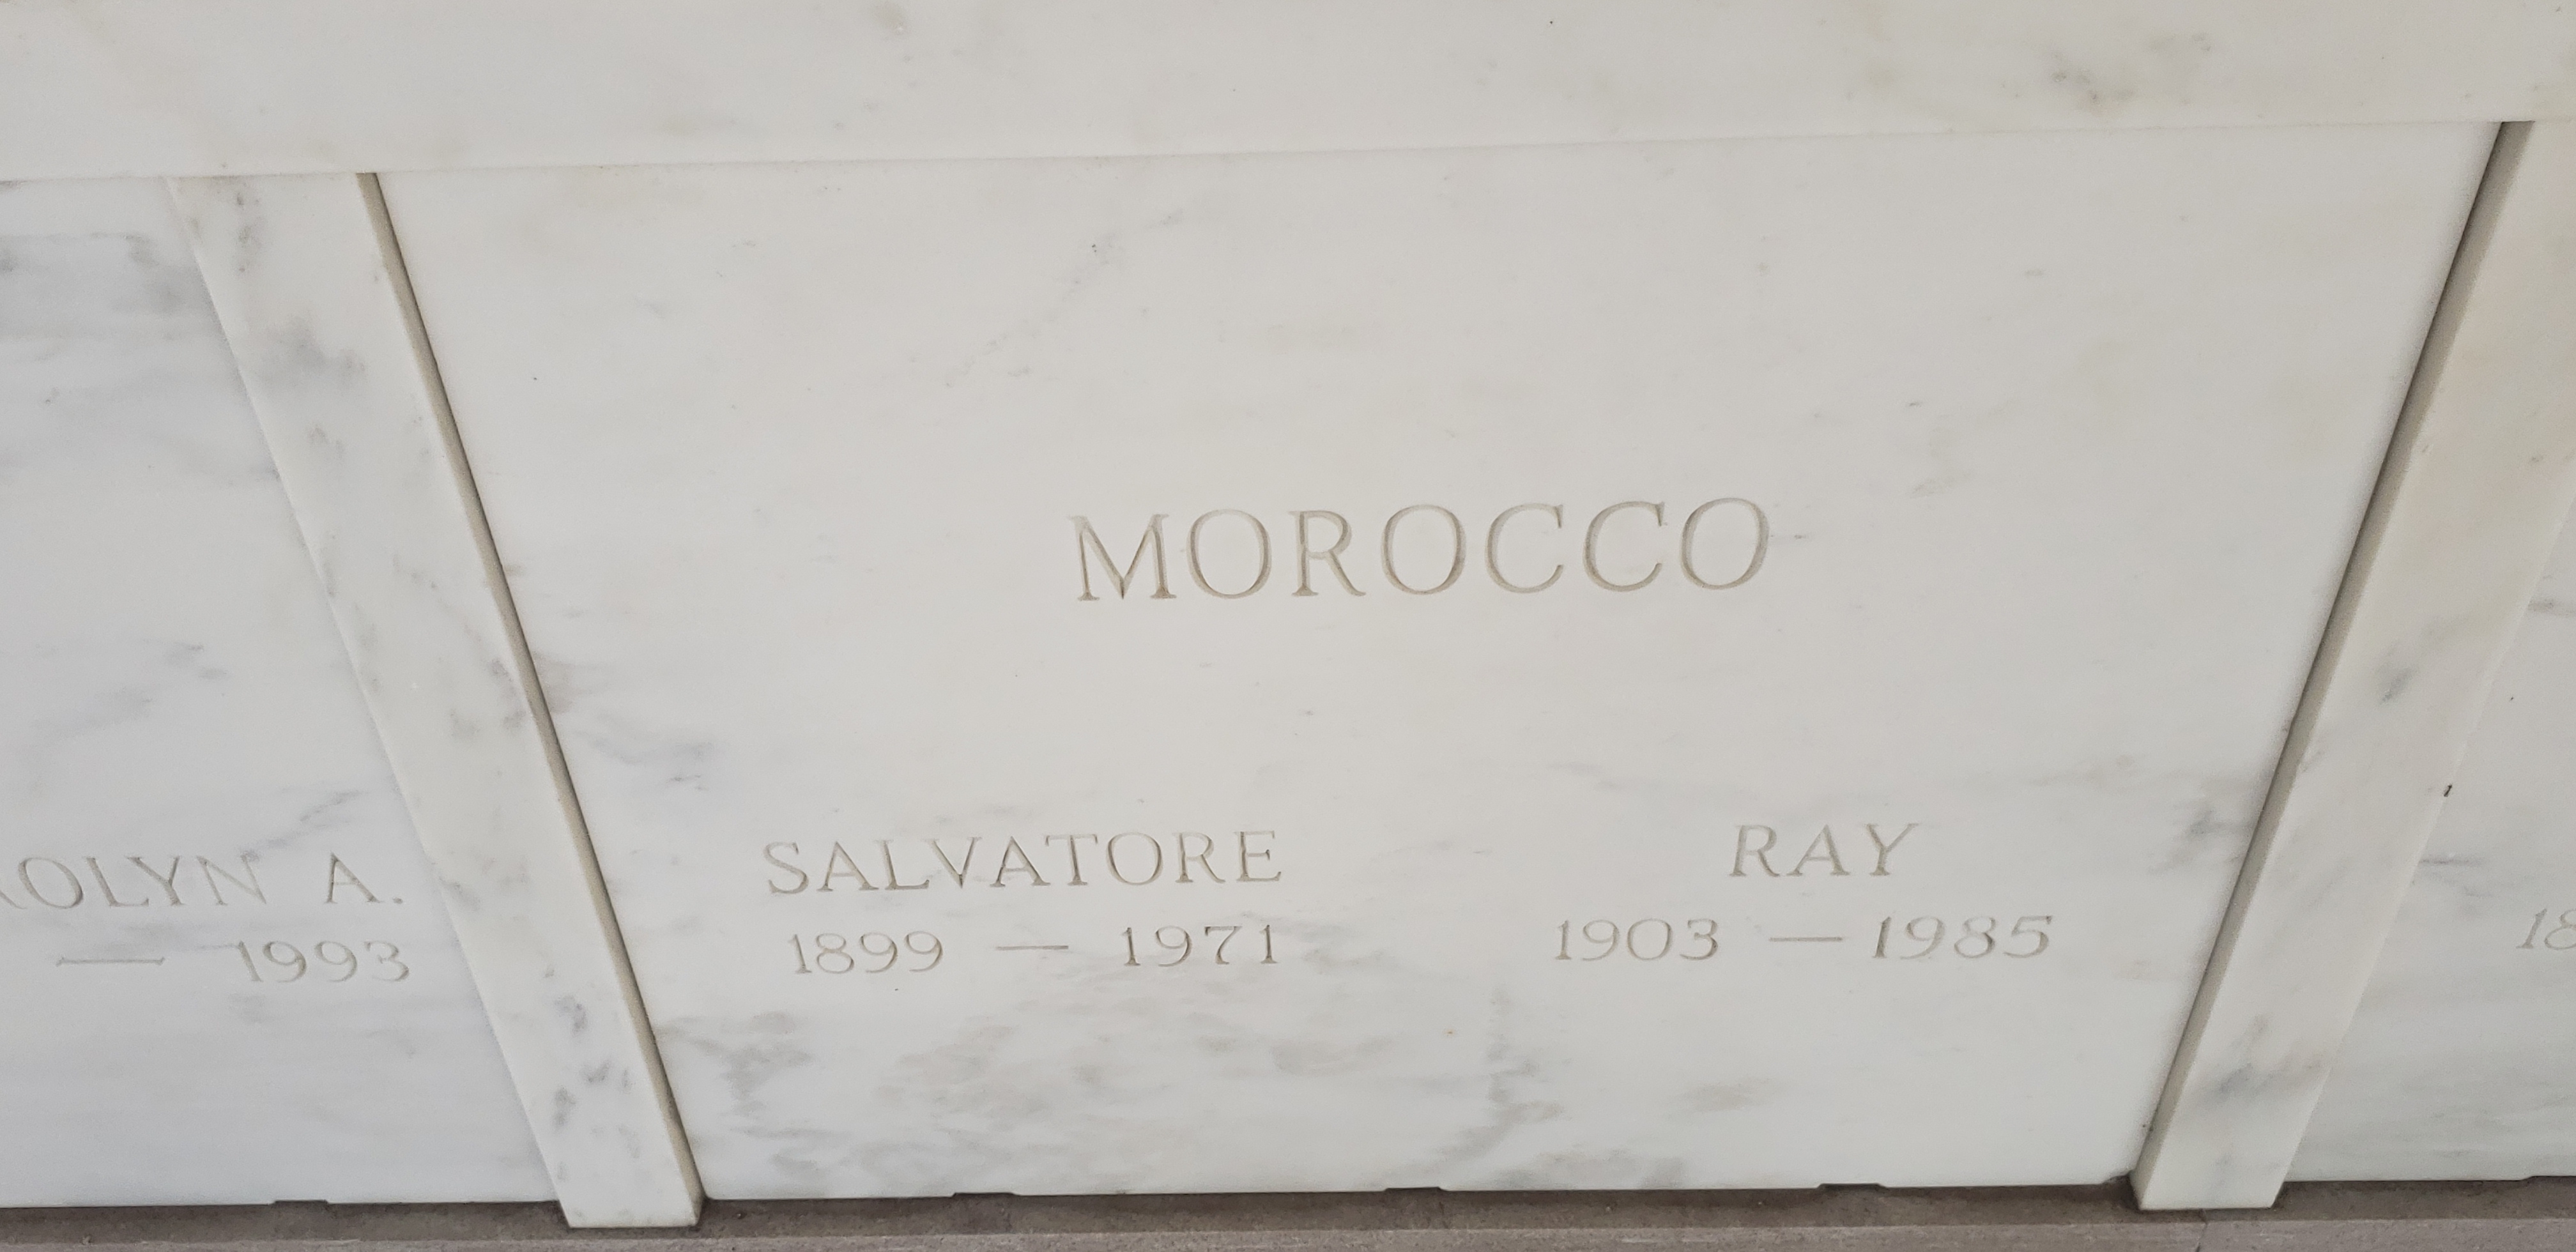 Salvatore Morocco